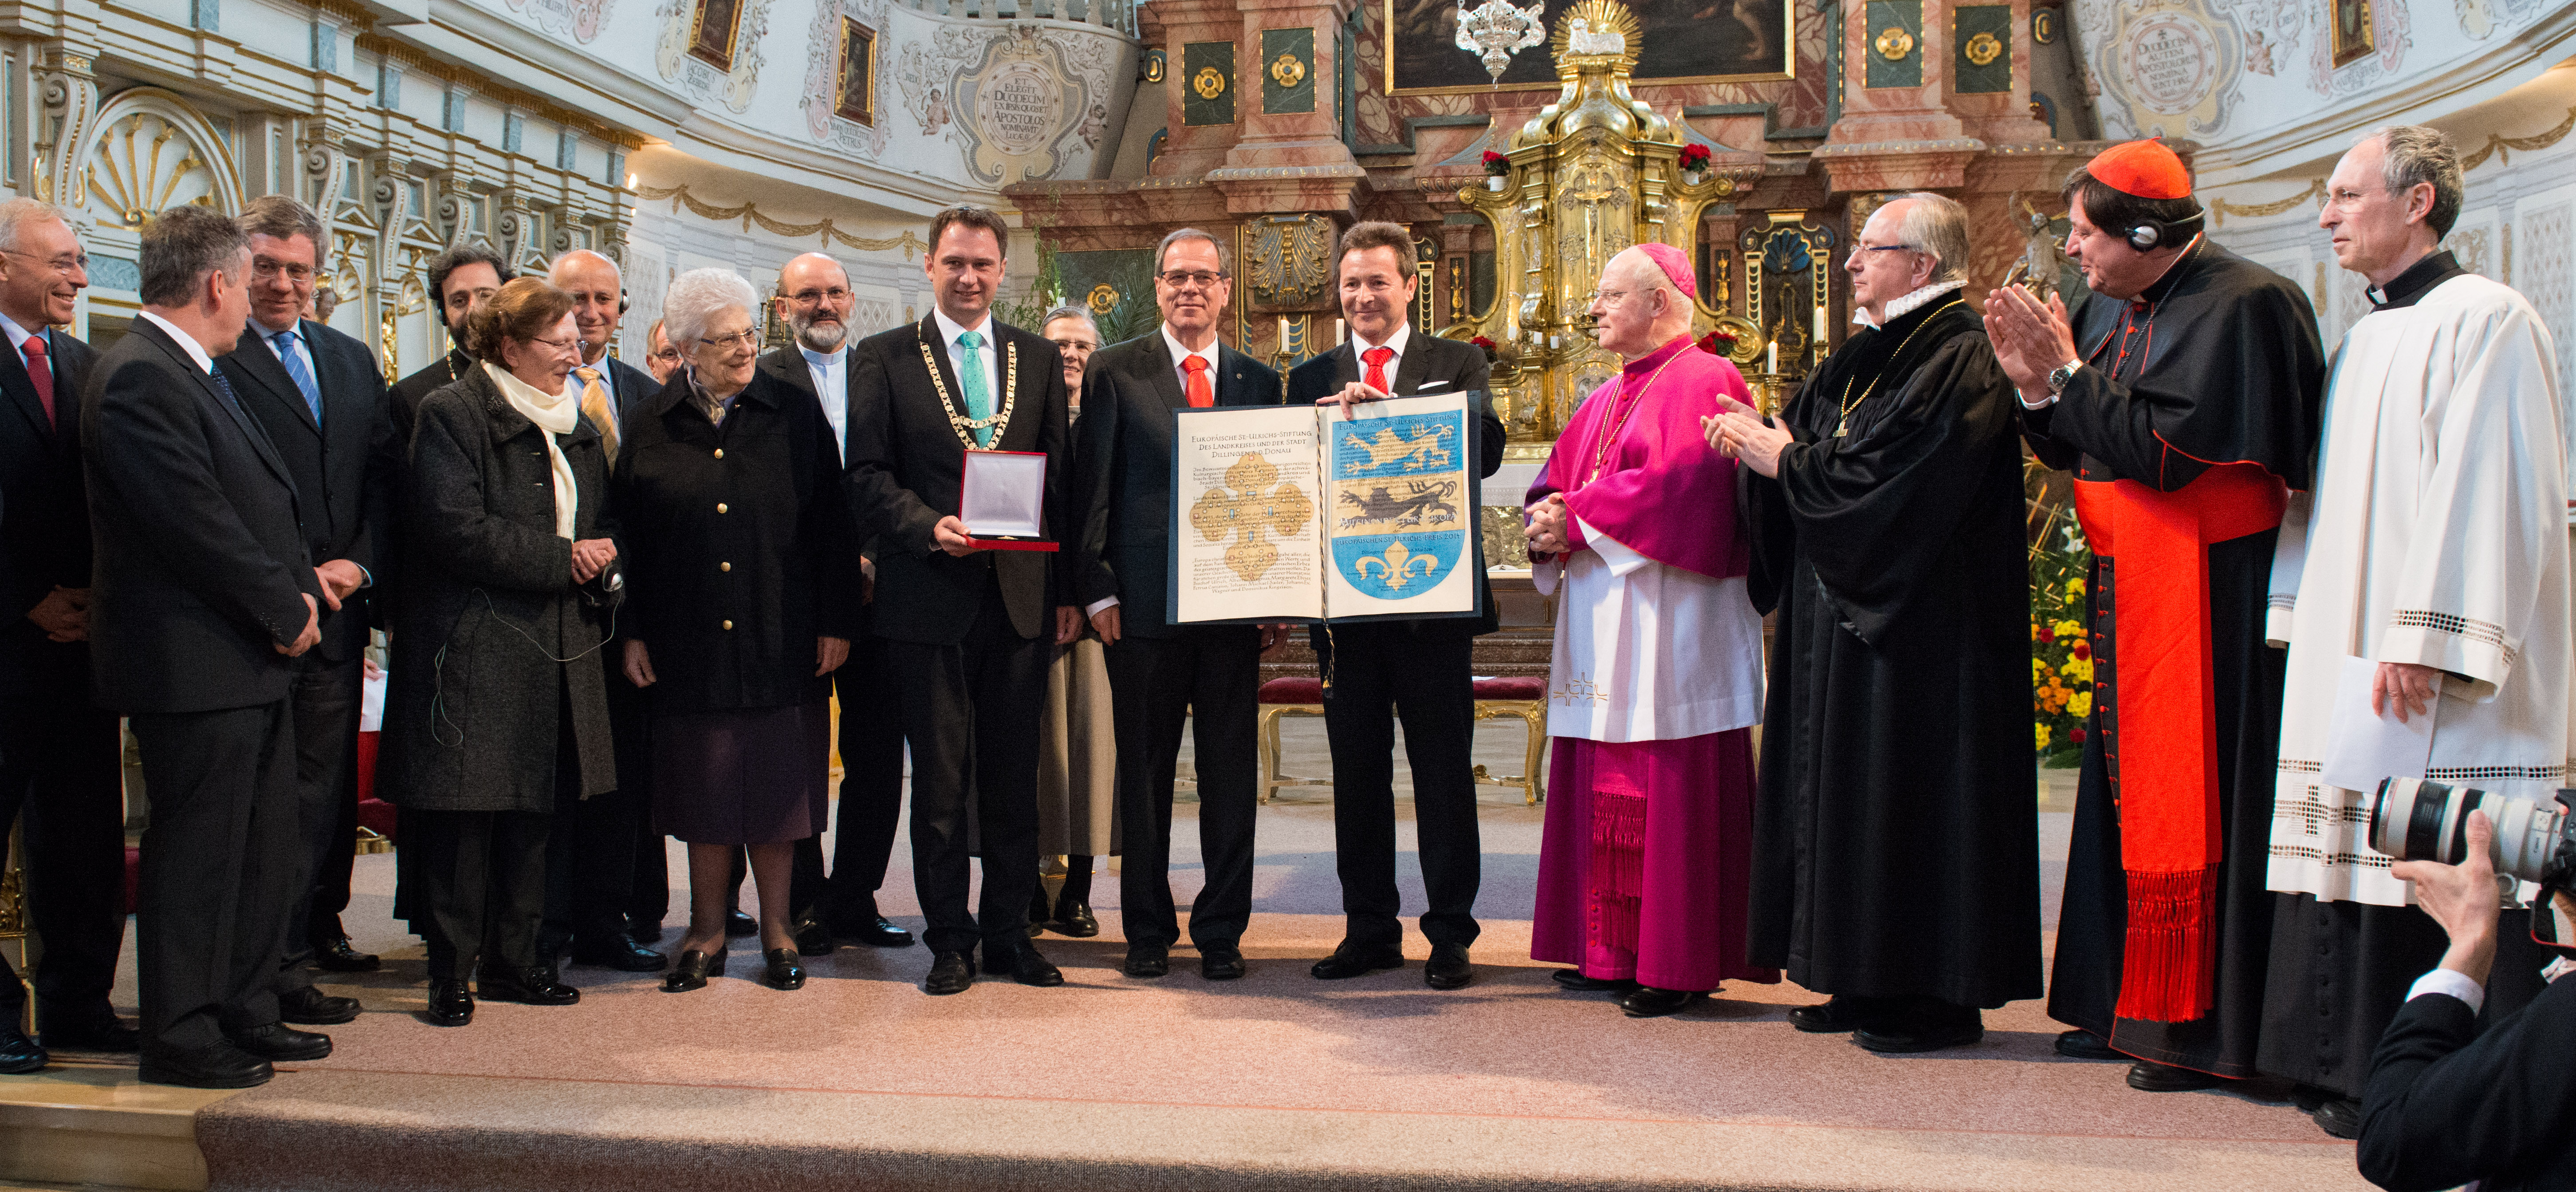 Prix européen de Saint-Ulrich 2014 attribué à Ensemble pour l’Europe